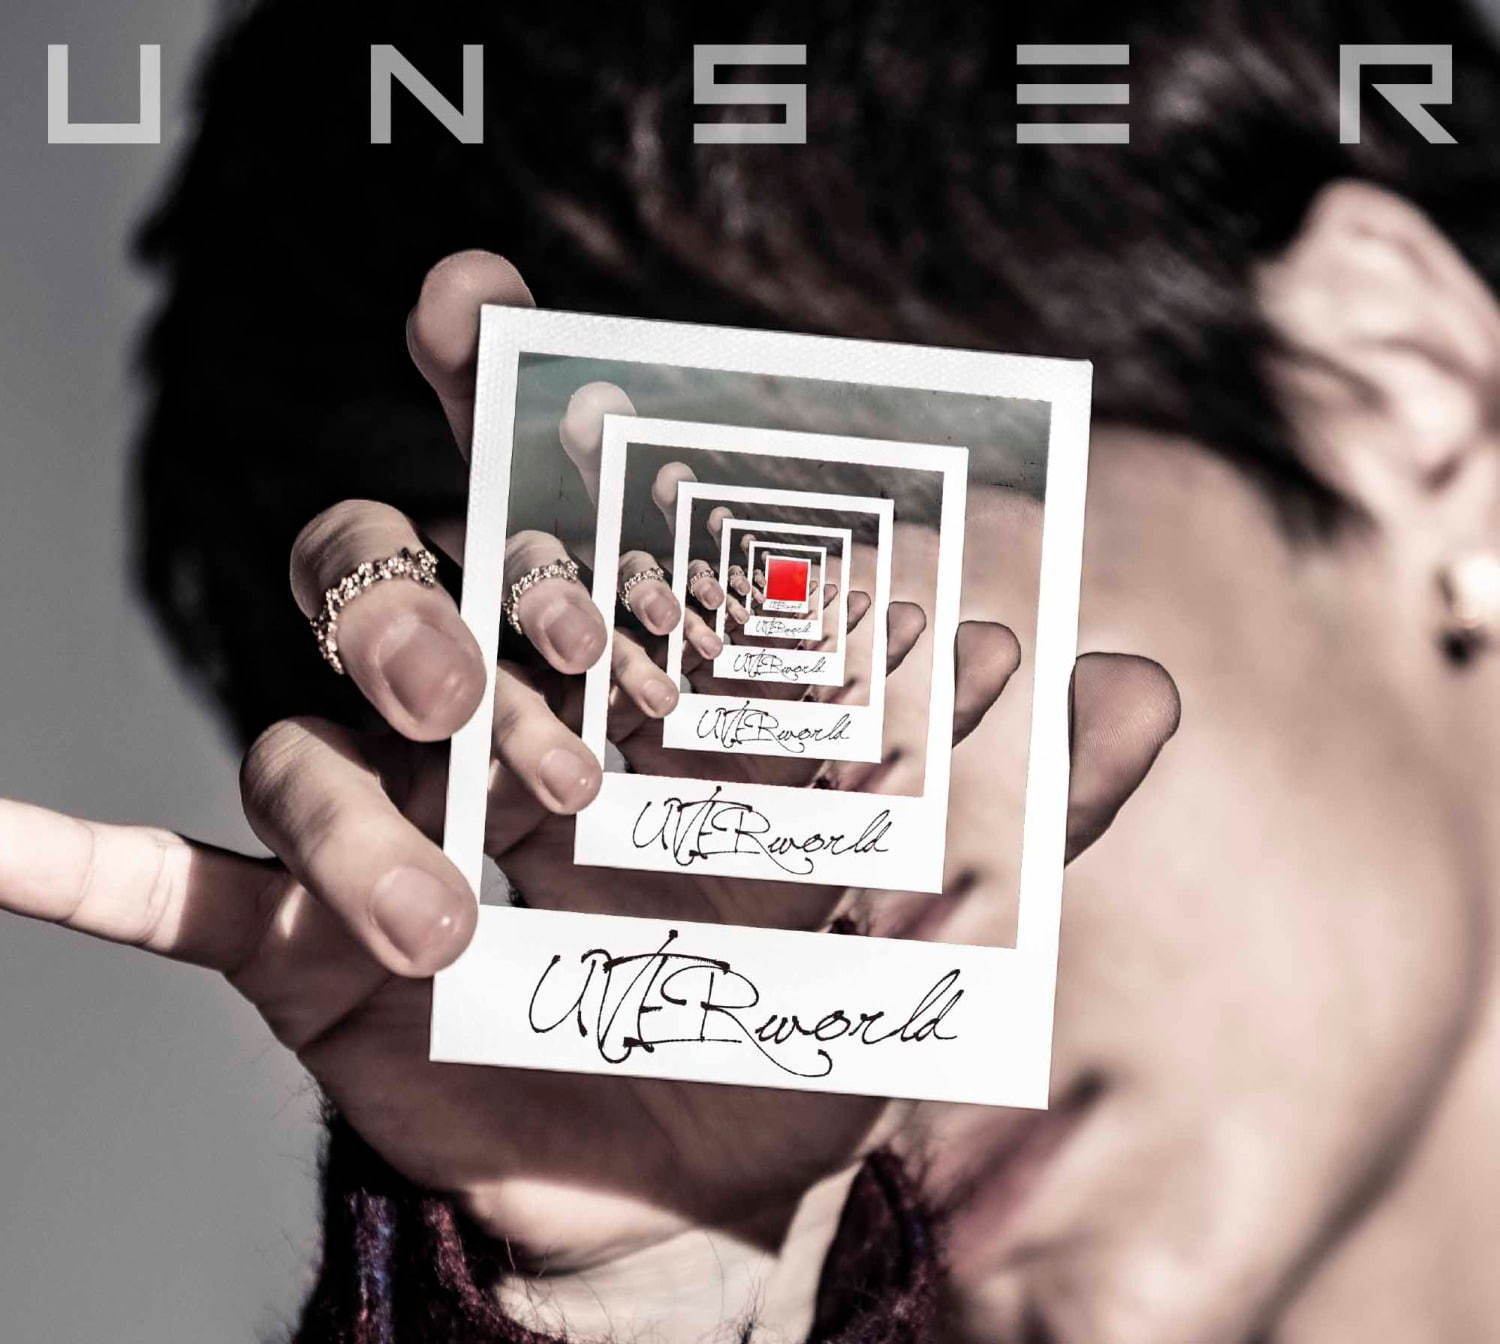 Uverworldが新作アルバム Unser アンサー リリース 全15曲を収録 ファッションプレス